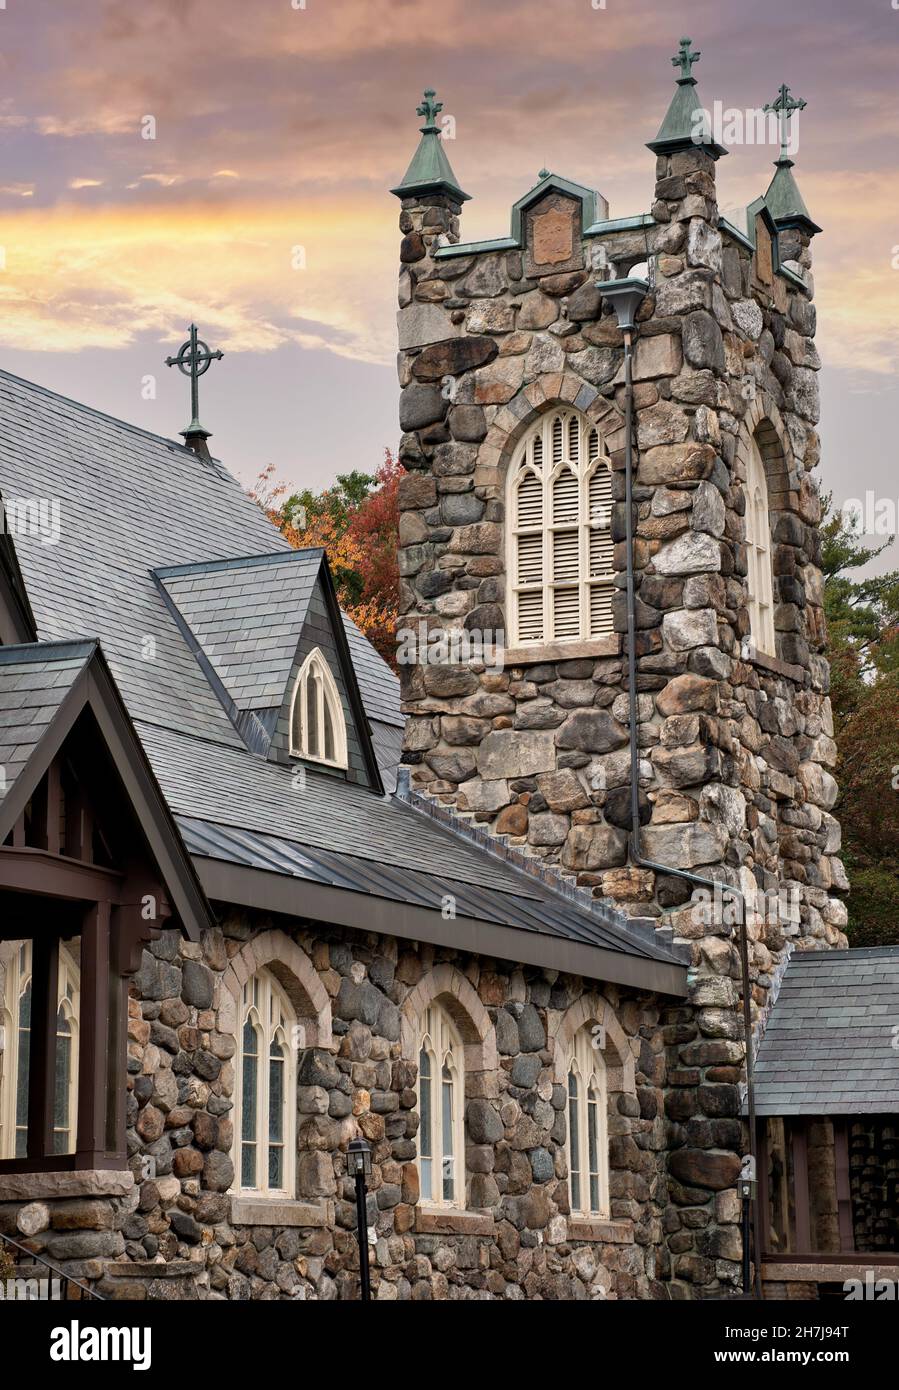 Église catholique de style gothique Saint Patrick, vieille de plusieurs siècles, à Jaffrey, dans le New Hampshire.L'extérieur du bâtiment et la tour ont été construits en pierres de champ. Banque D'Images